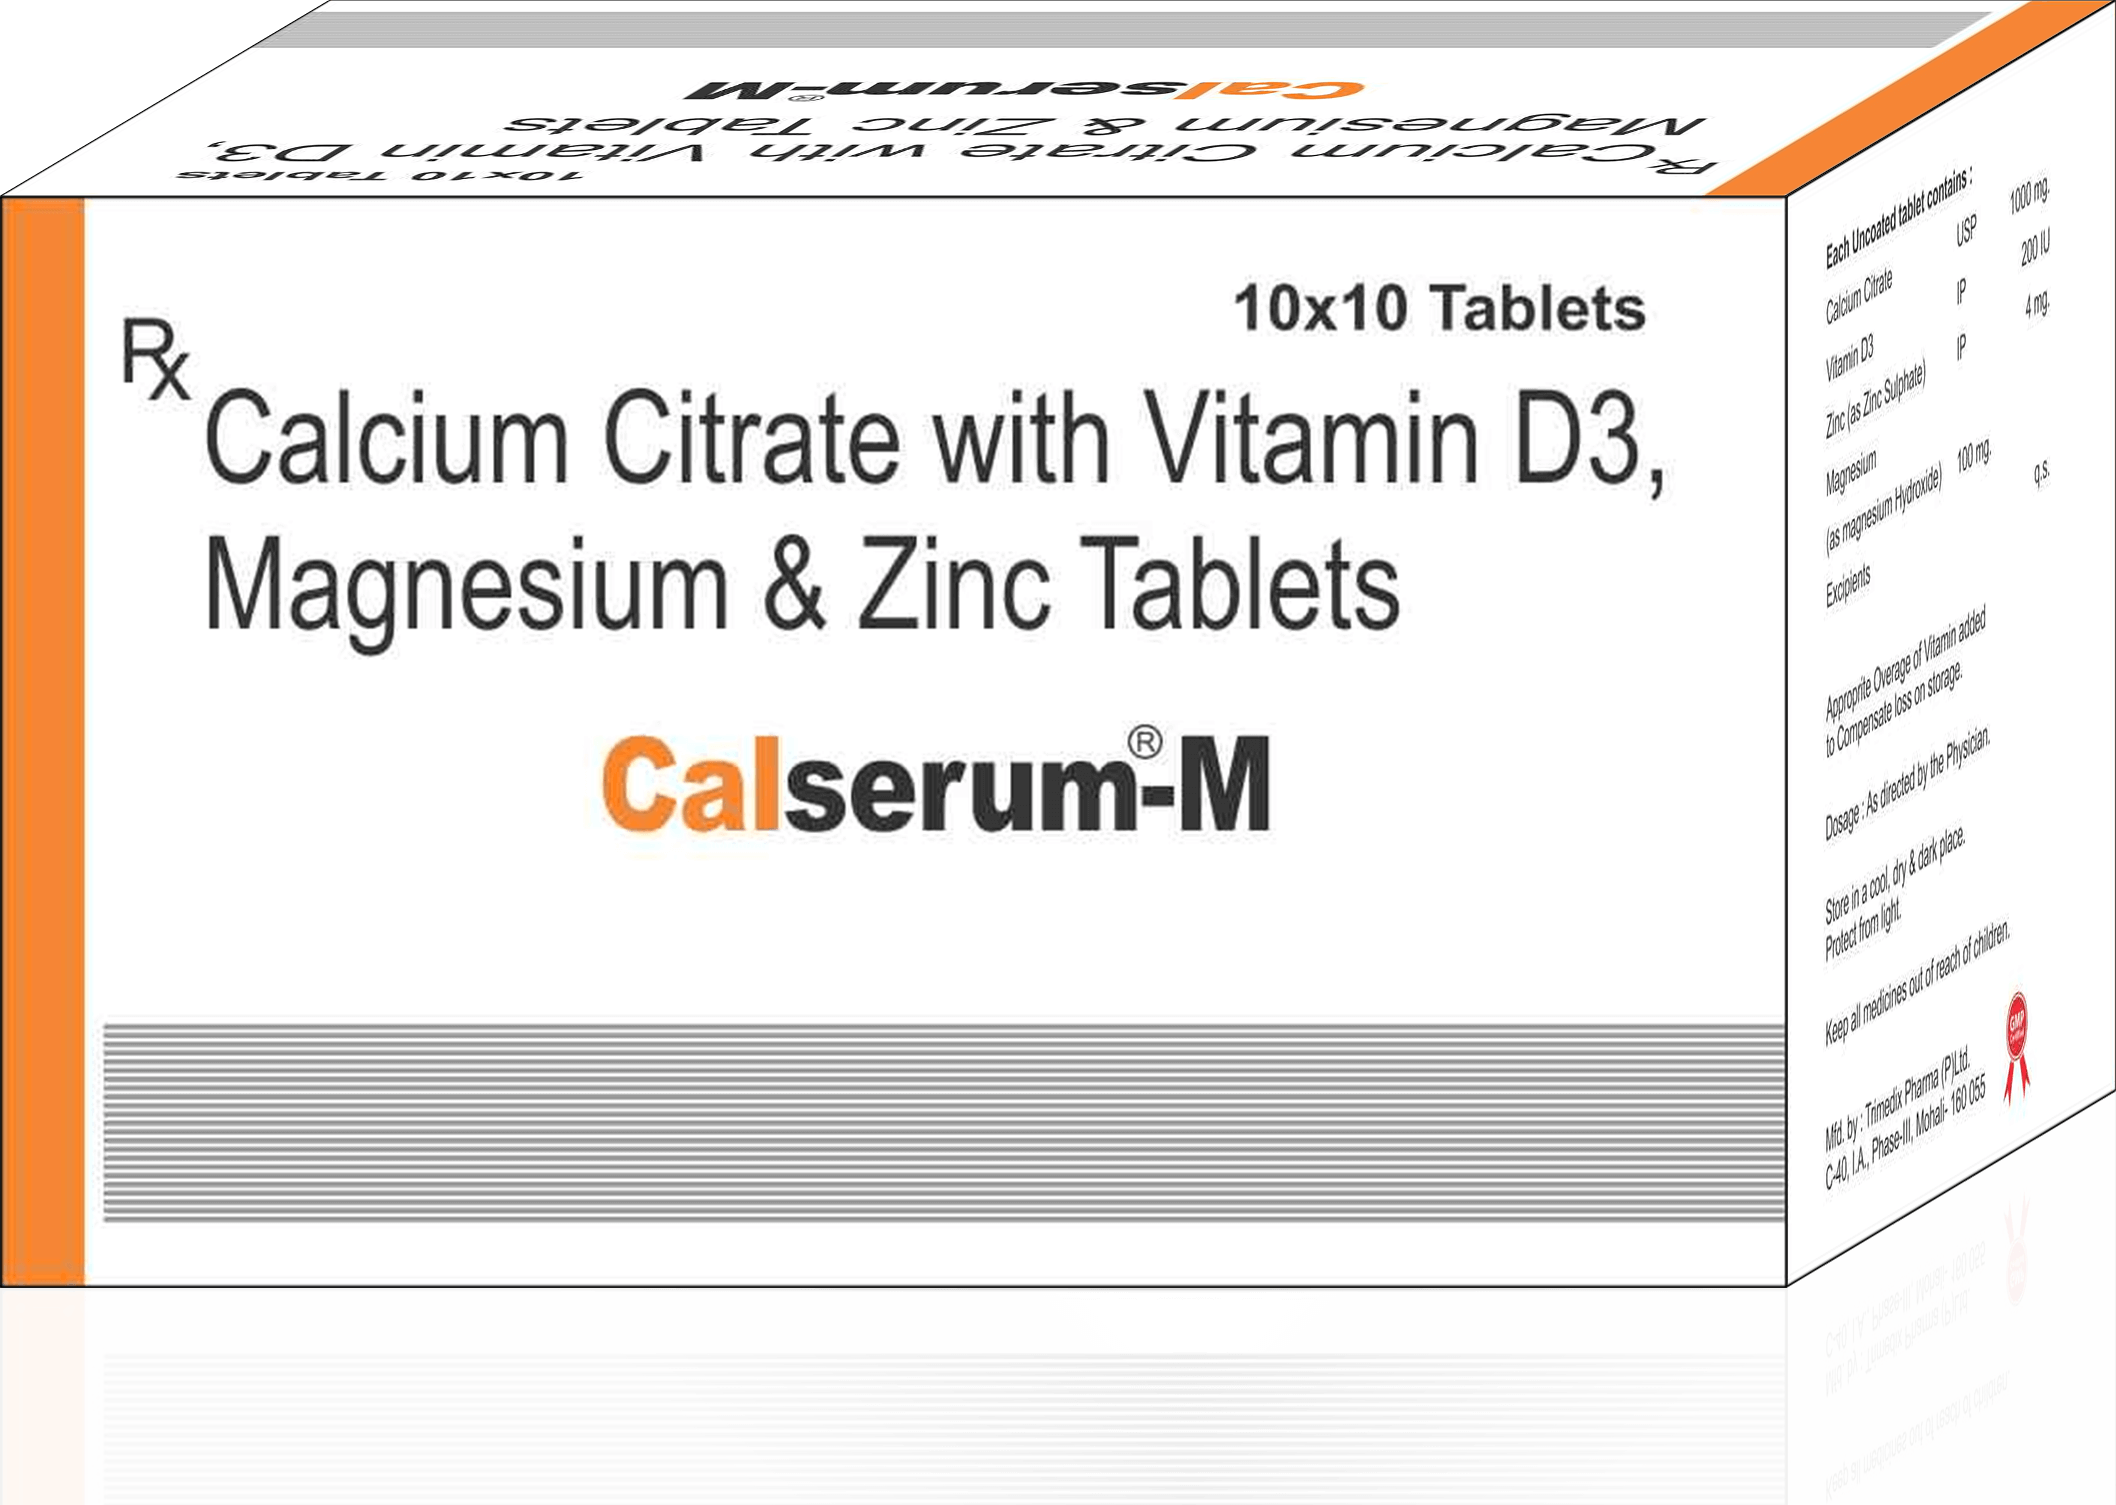 Calserum - M